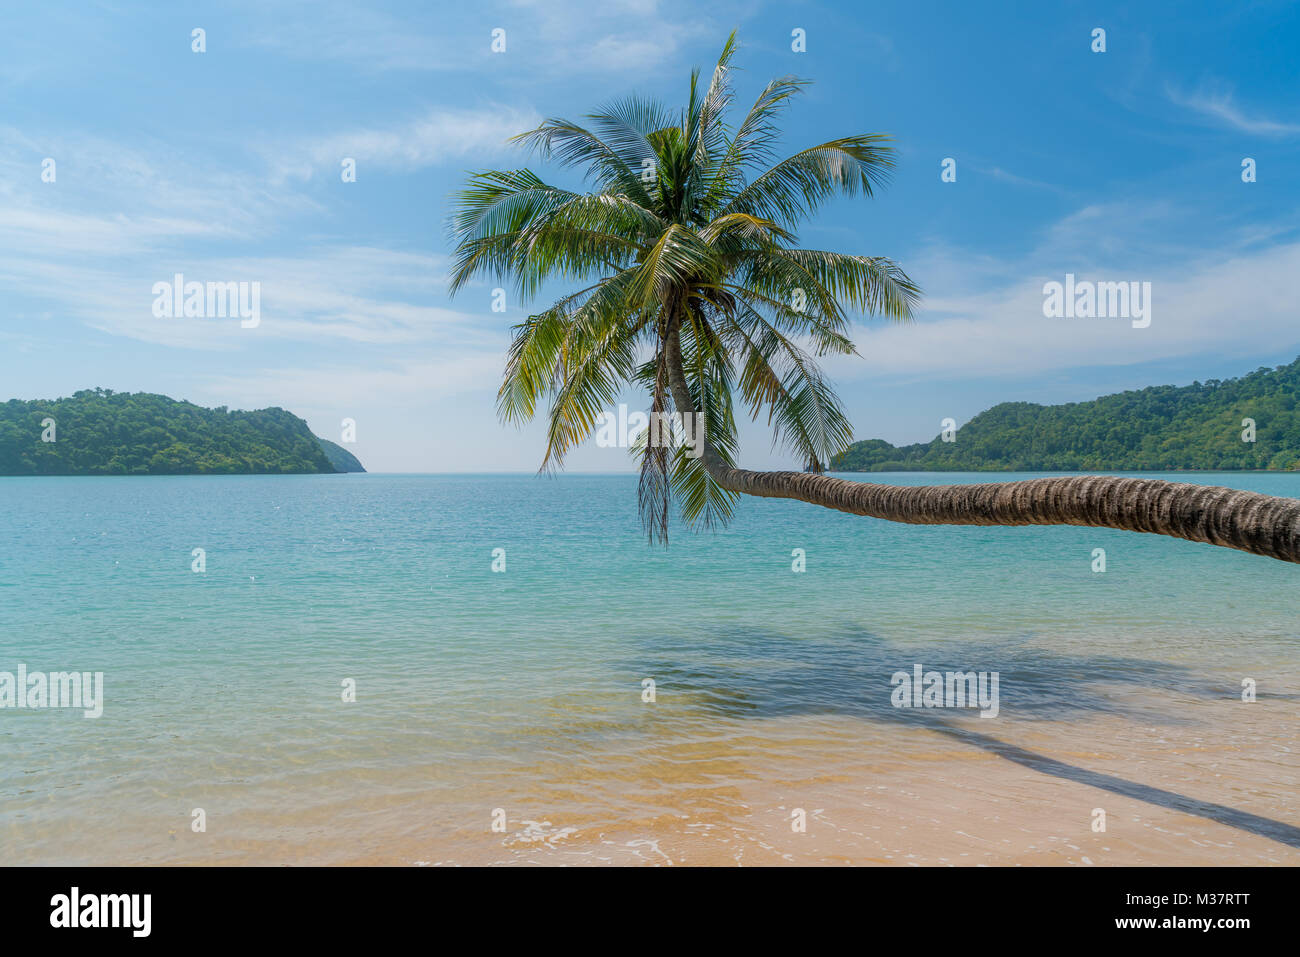 Coconut palm tree over summer beach Phuket en Thaïlande, la mer. L'été, les voyages, vacances et maison de vacances concept Banque D'Images